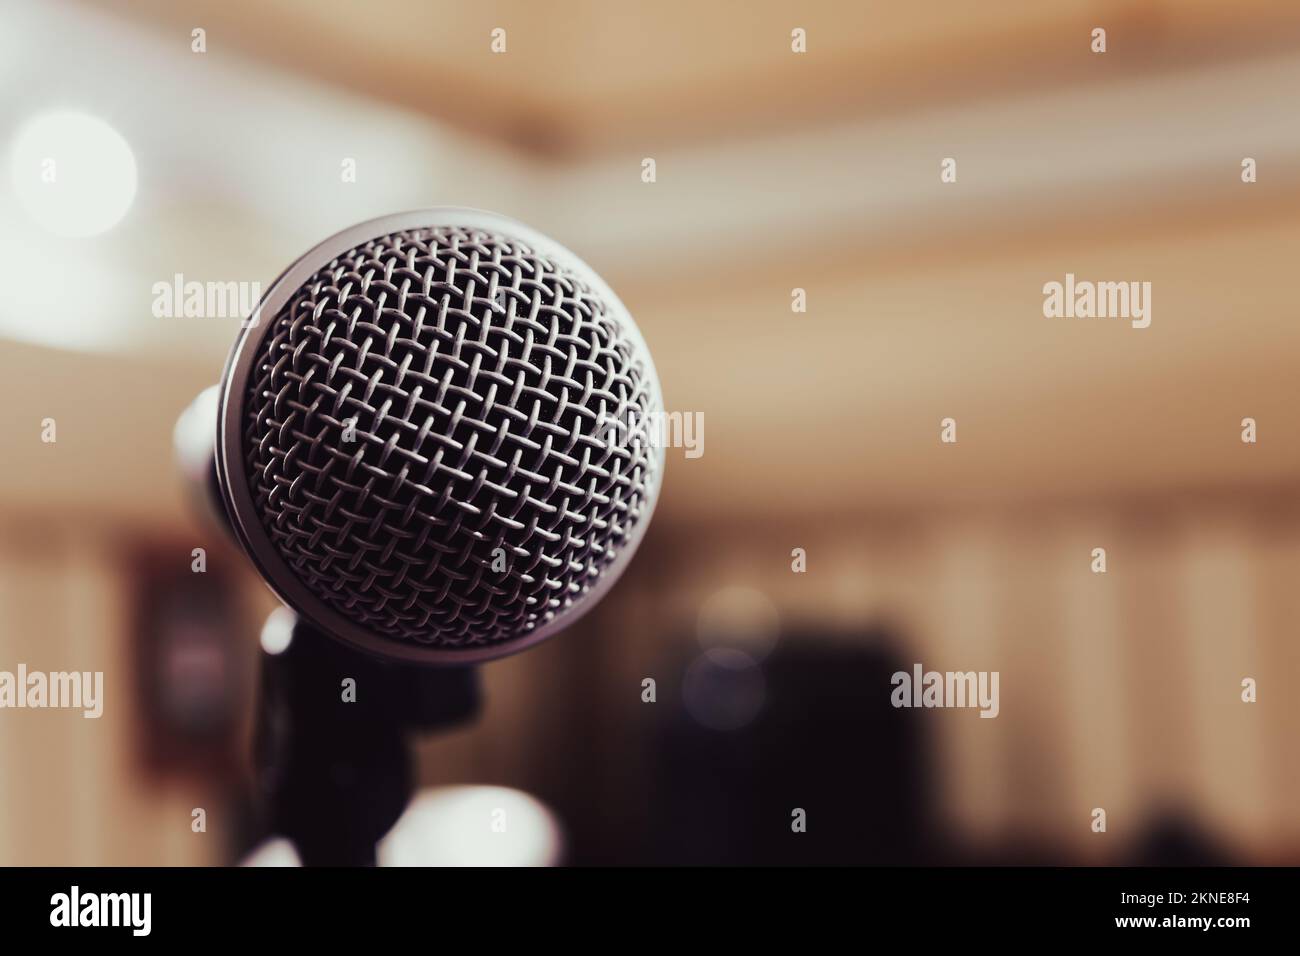 Dettaglio della griglia frontale metallica del microfono contro lo spazio di copia di sfondo sfocato sulla destra, voce vocale cantare musica dal vivo concetto Foto Stock